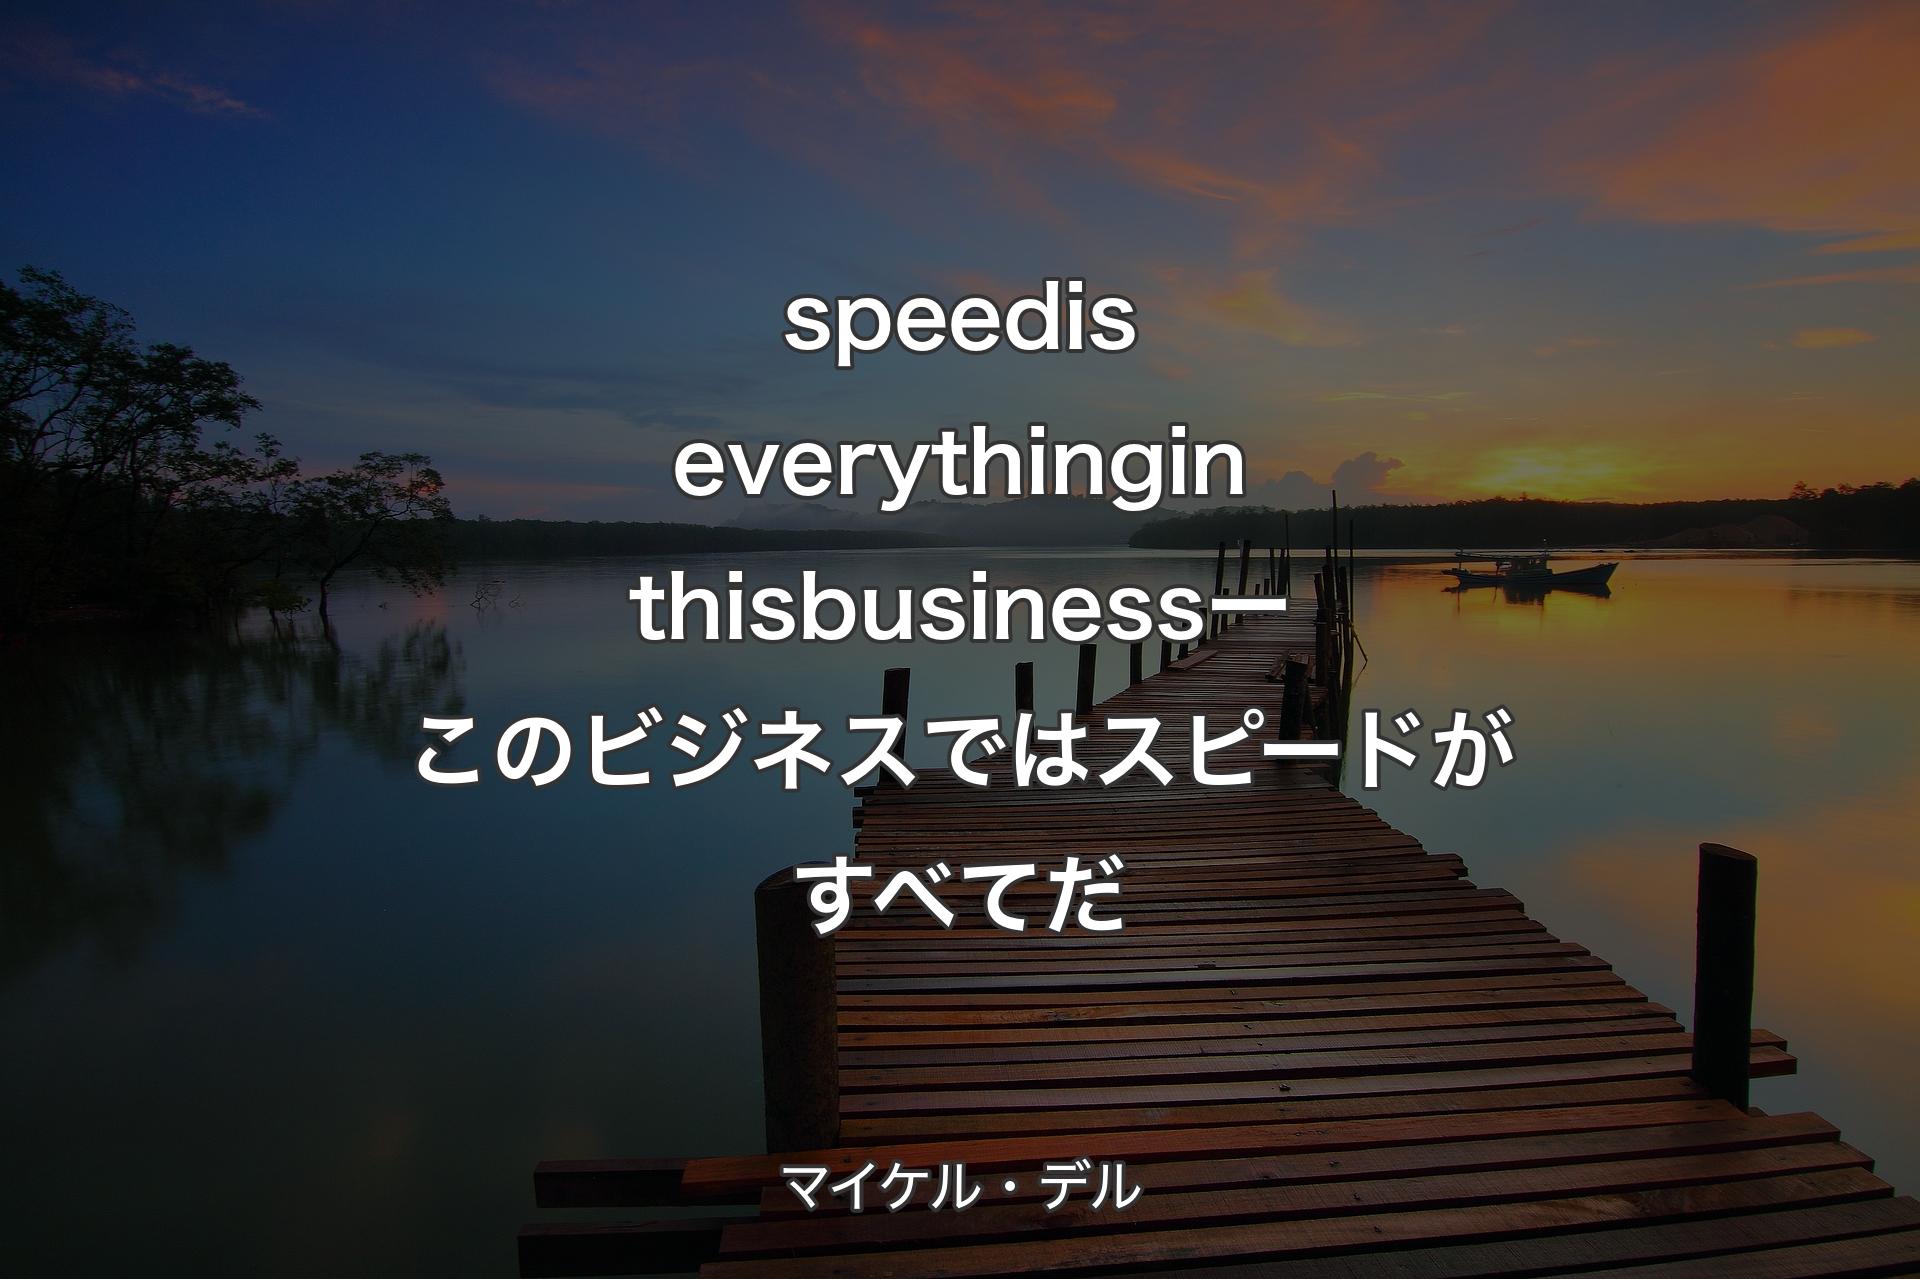 【背景3】speed is everything in this business ー このビジネスではスピードがすべてだ - マイケル・デル